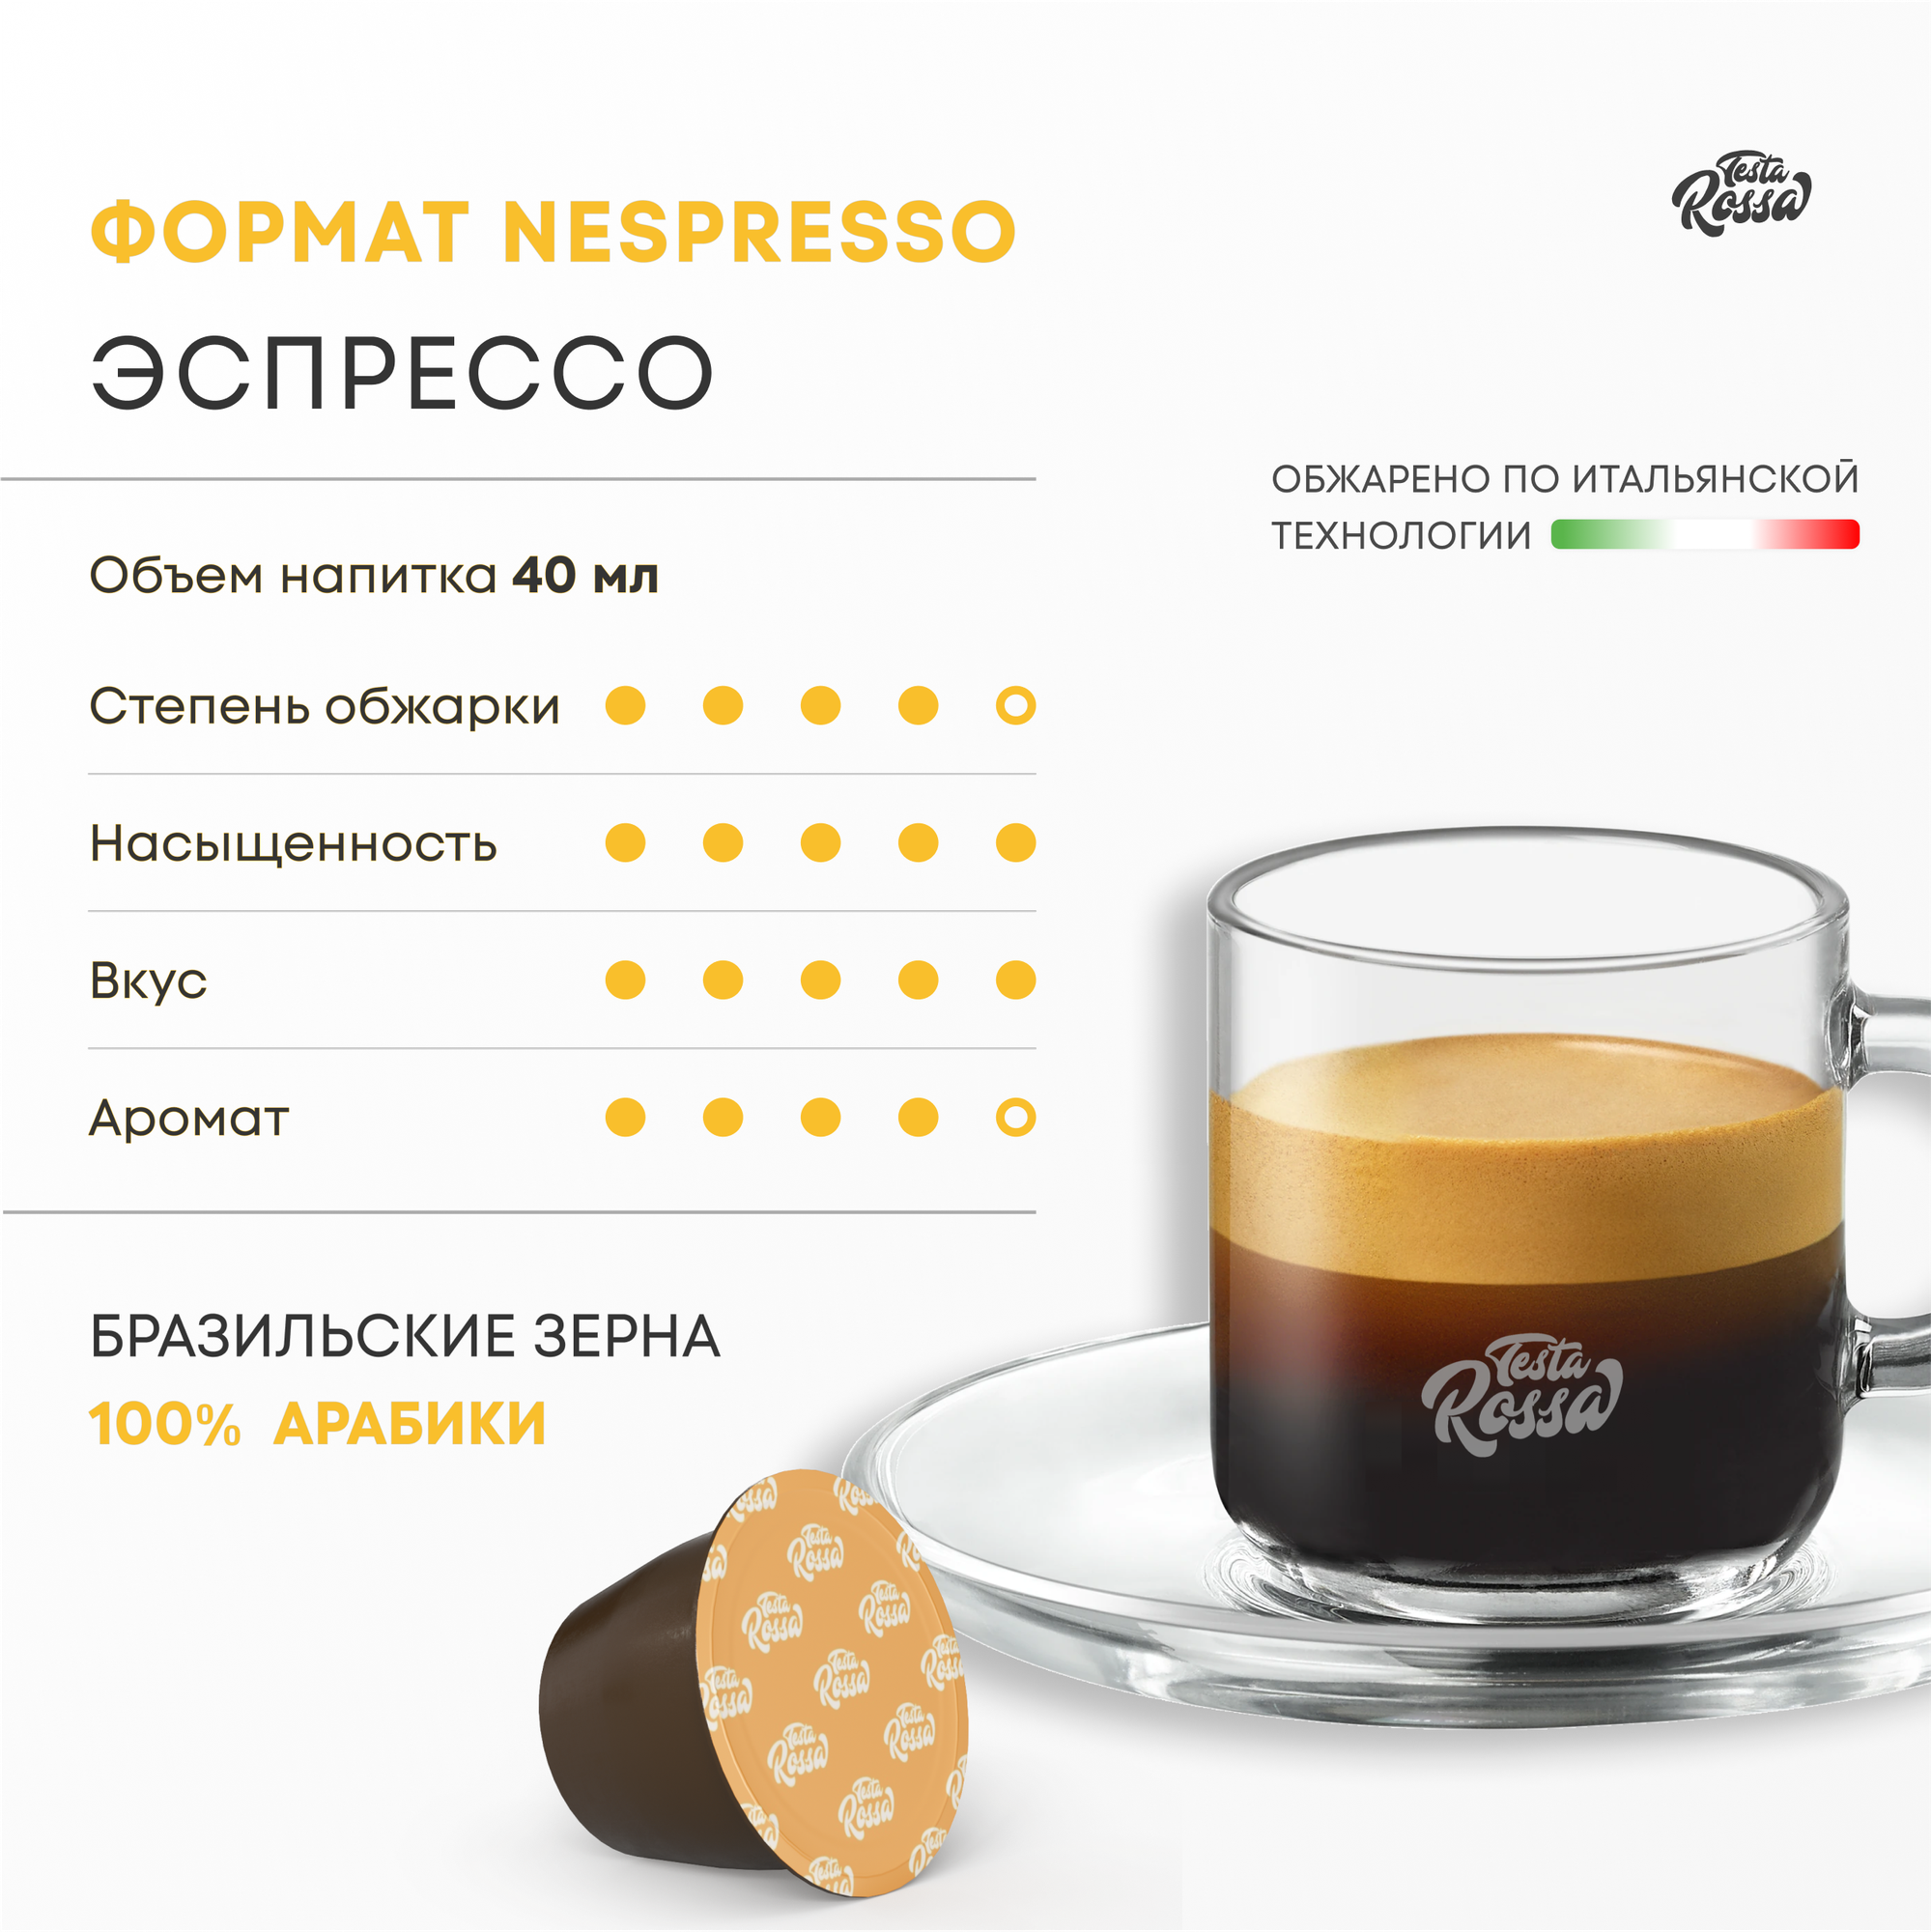 Эспрессо Арабика 100% - Капсулы Testa Rossa - 10 шт, набор кофе в капсулах неспрессо, для кофемашины NESPRESSO - фотография № 10